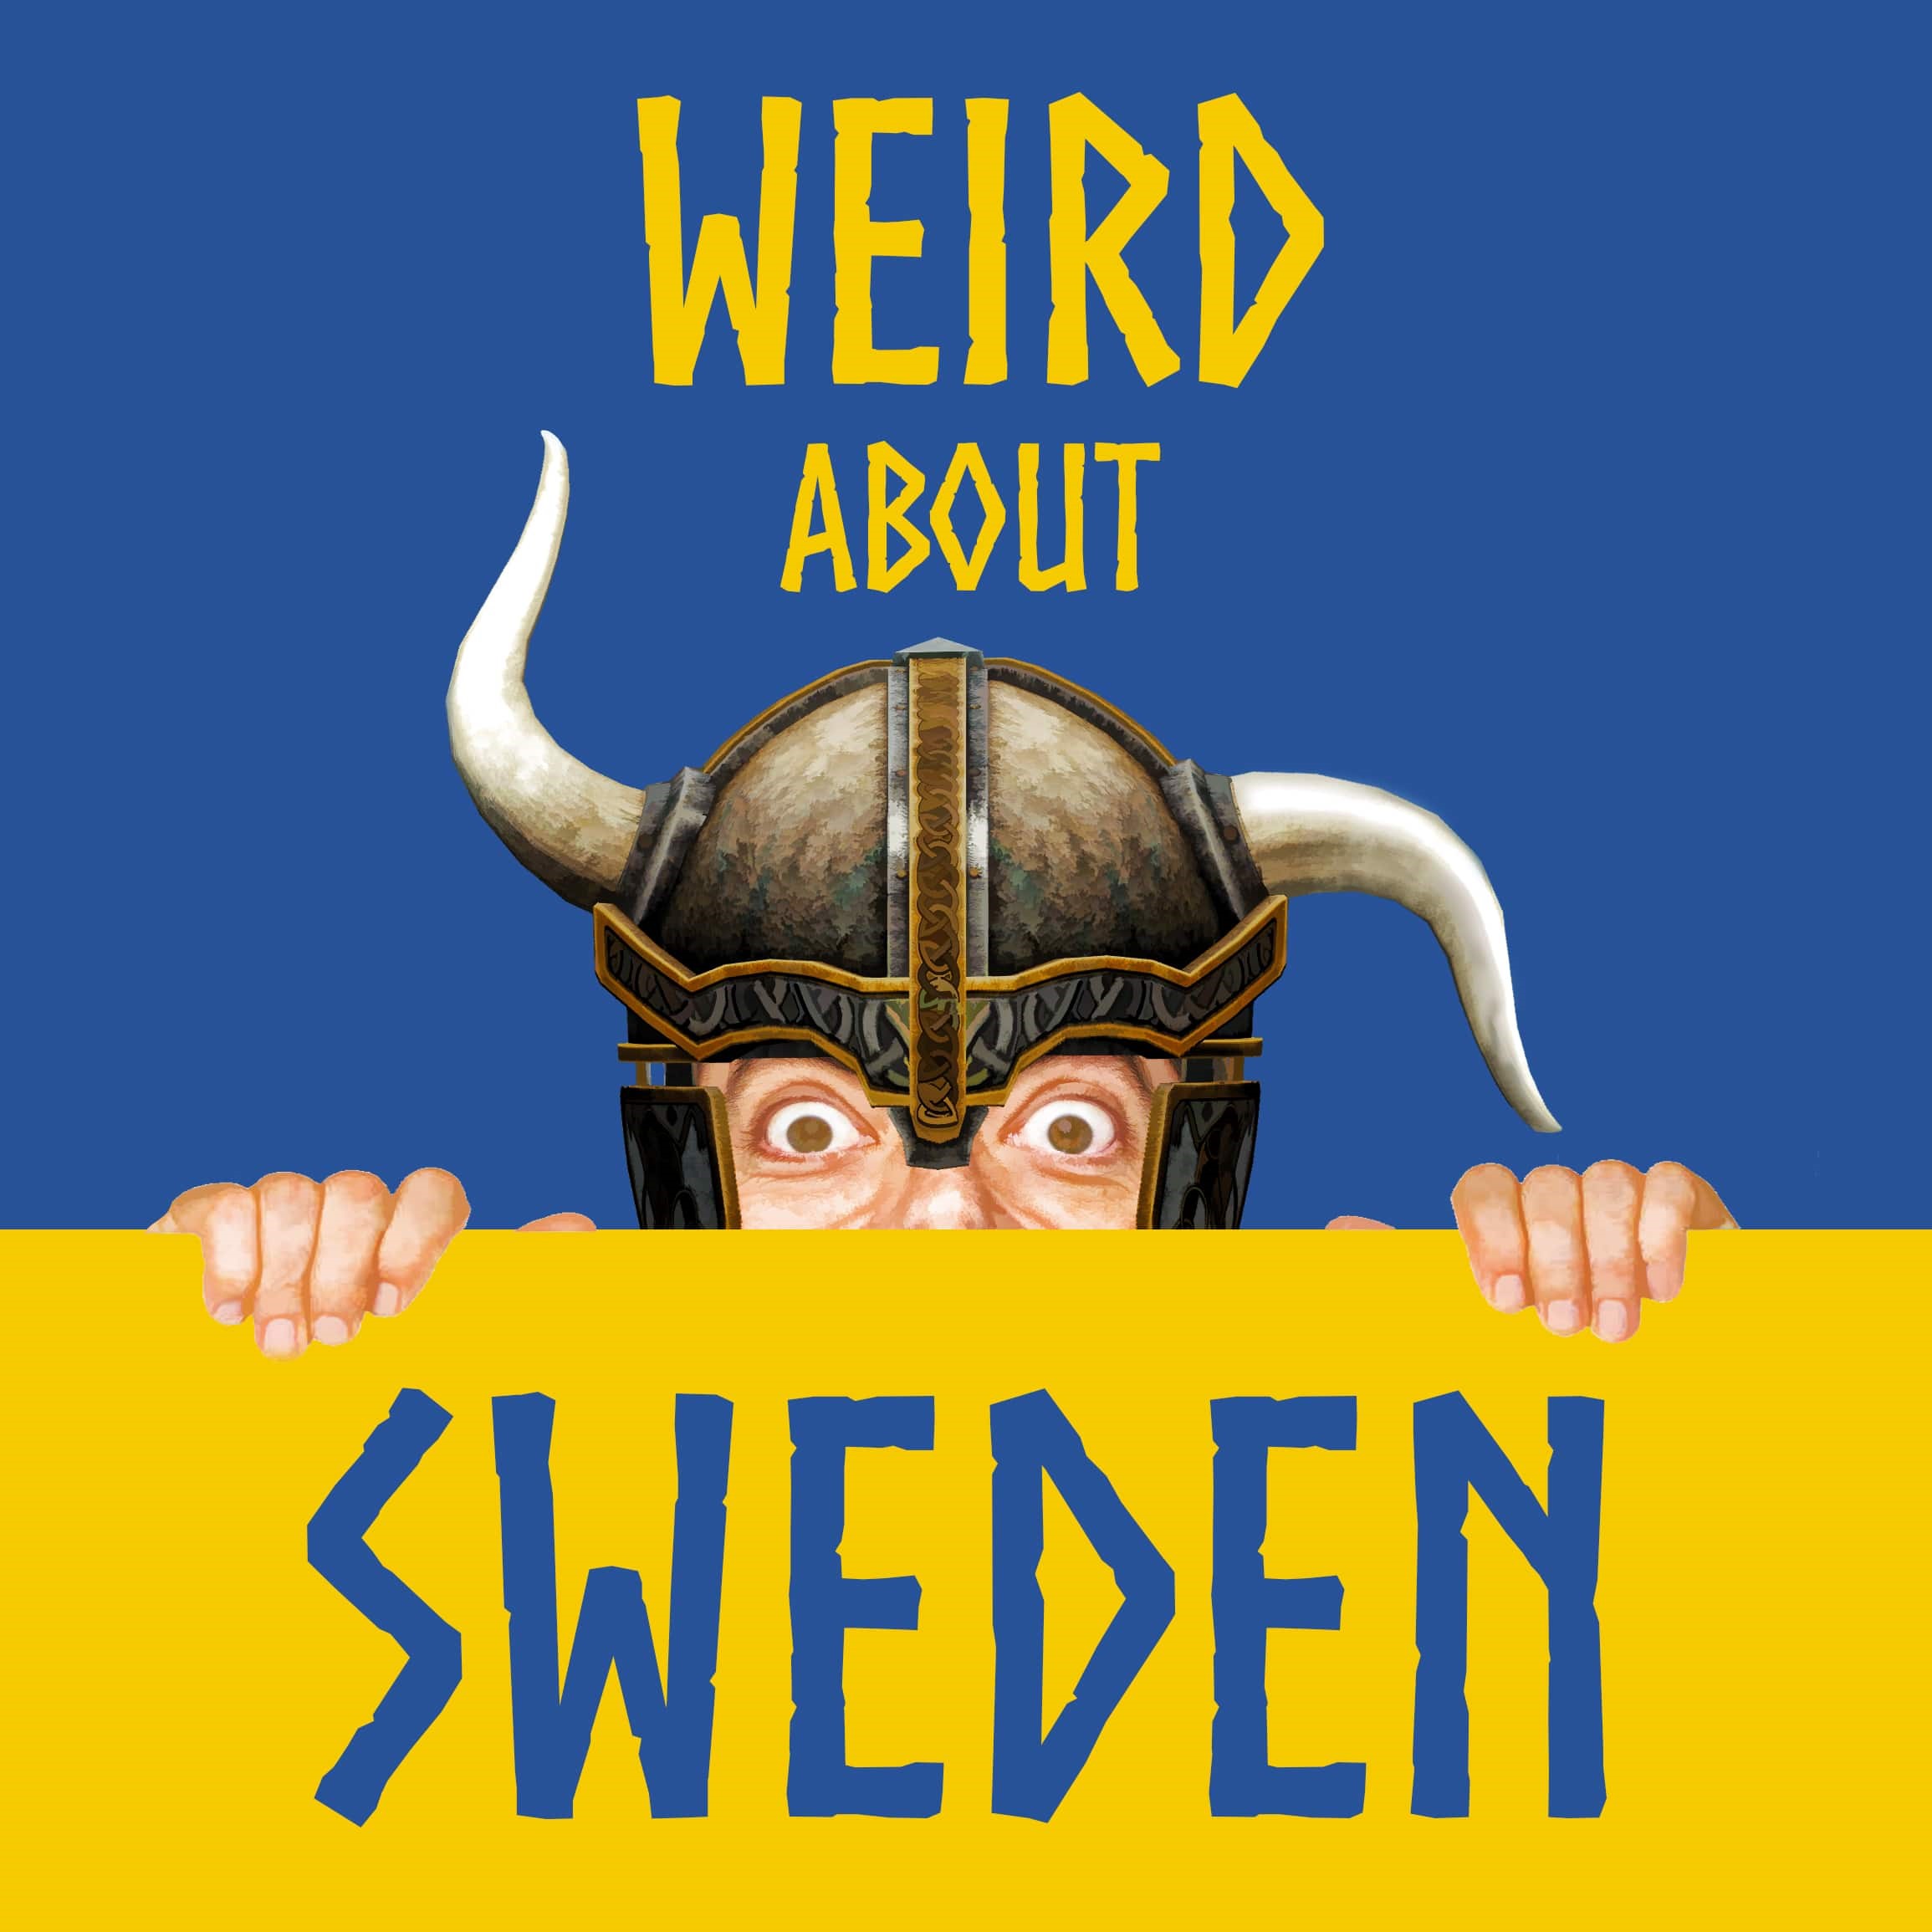 Weird About Sweden Podcast